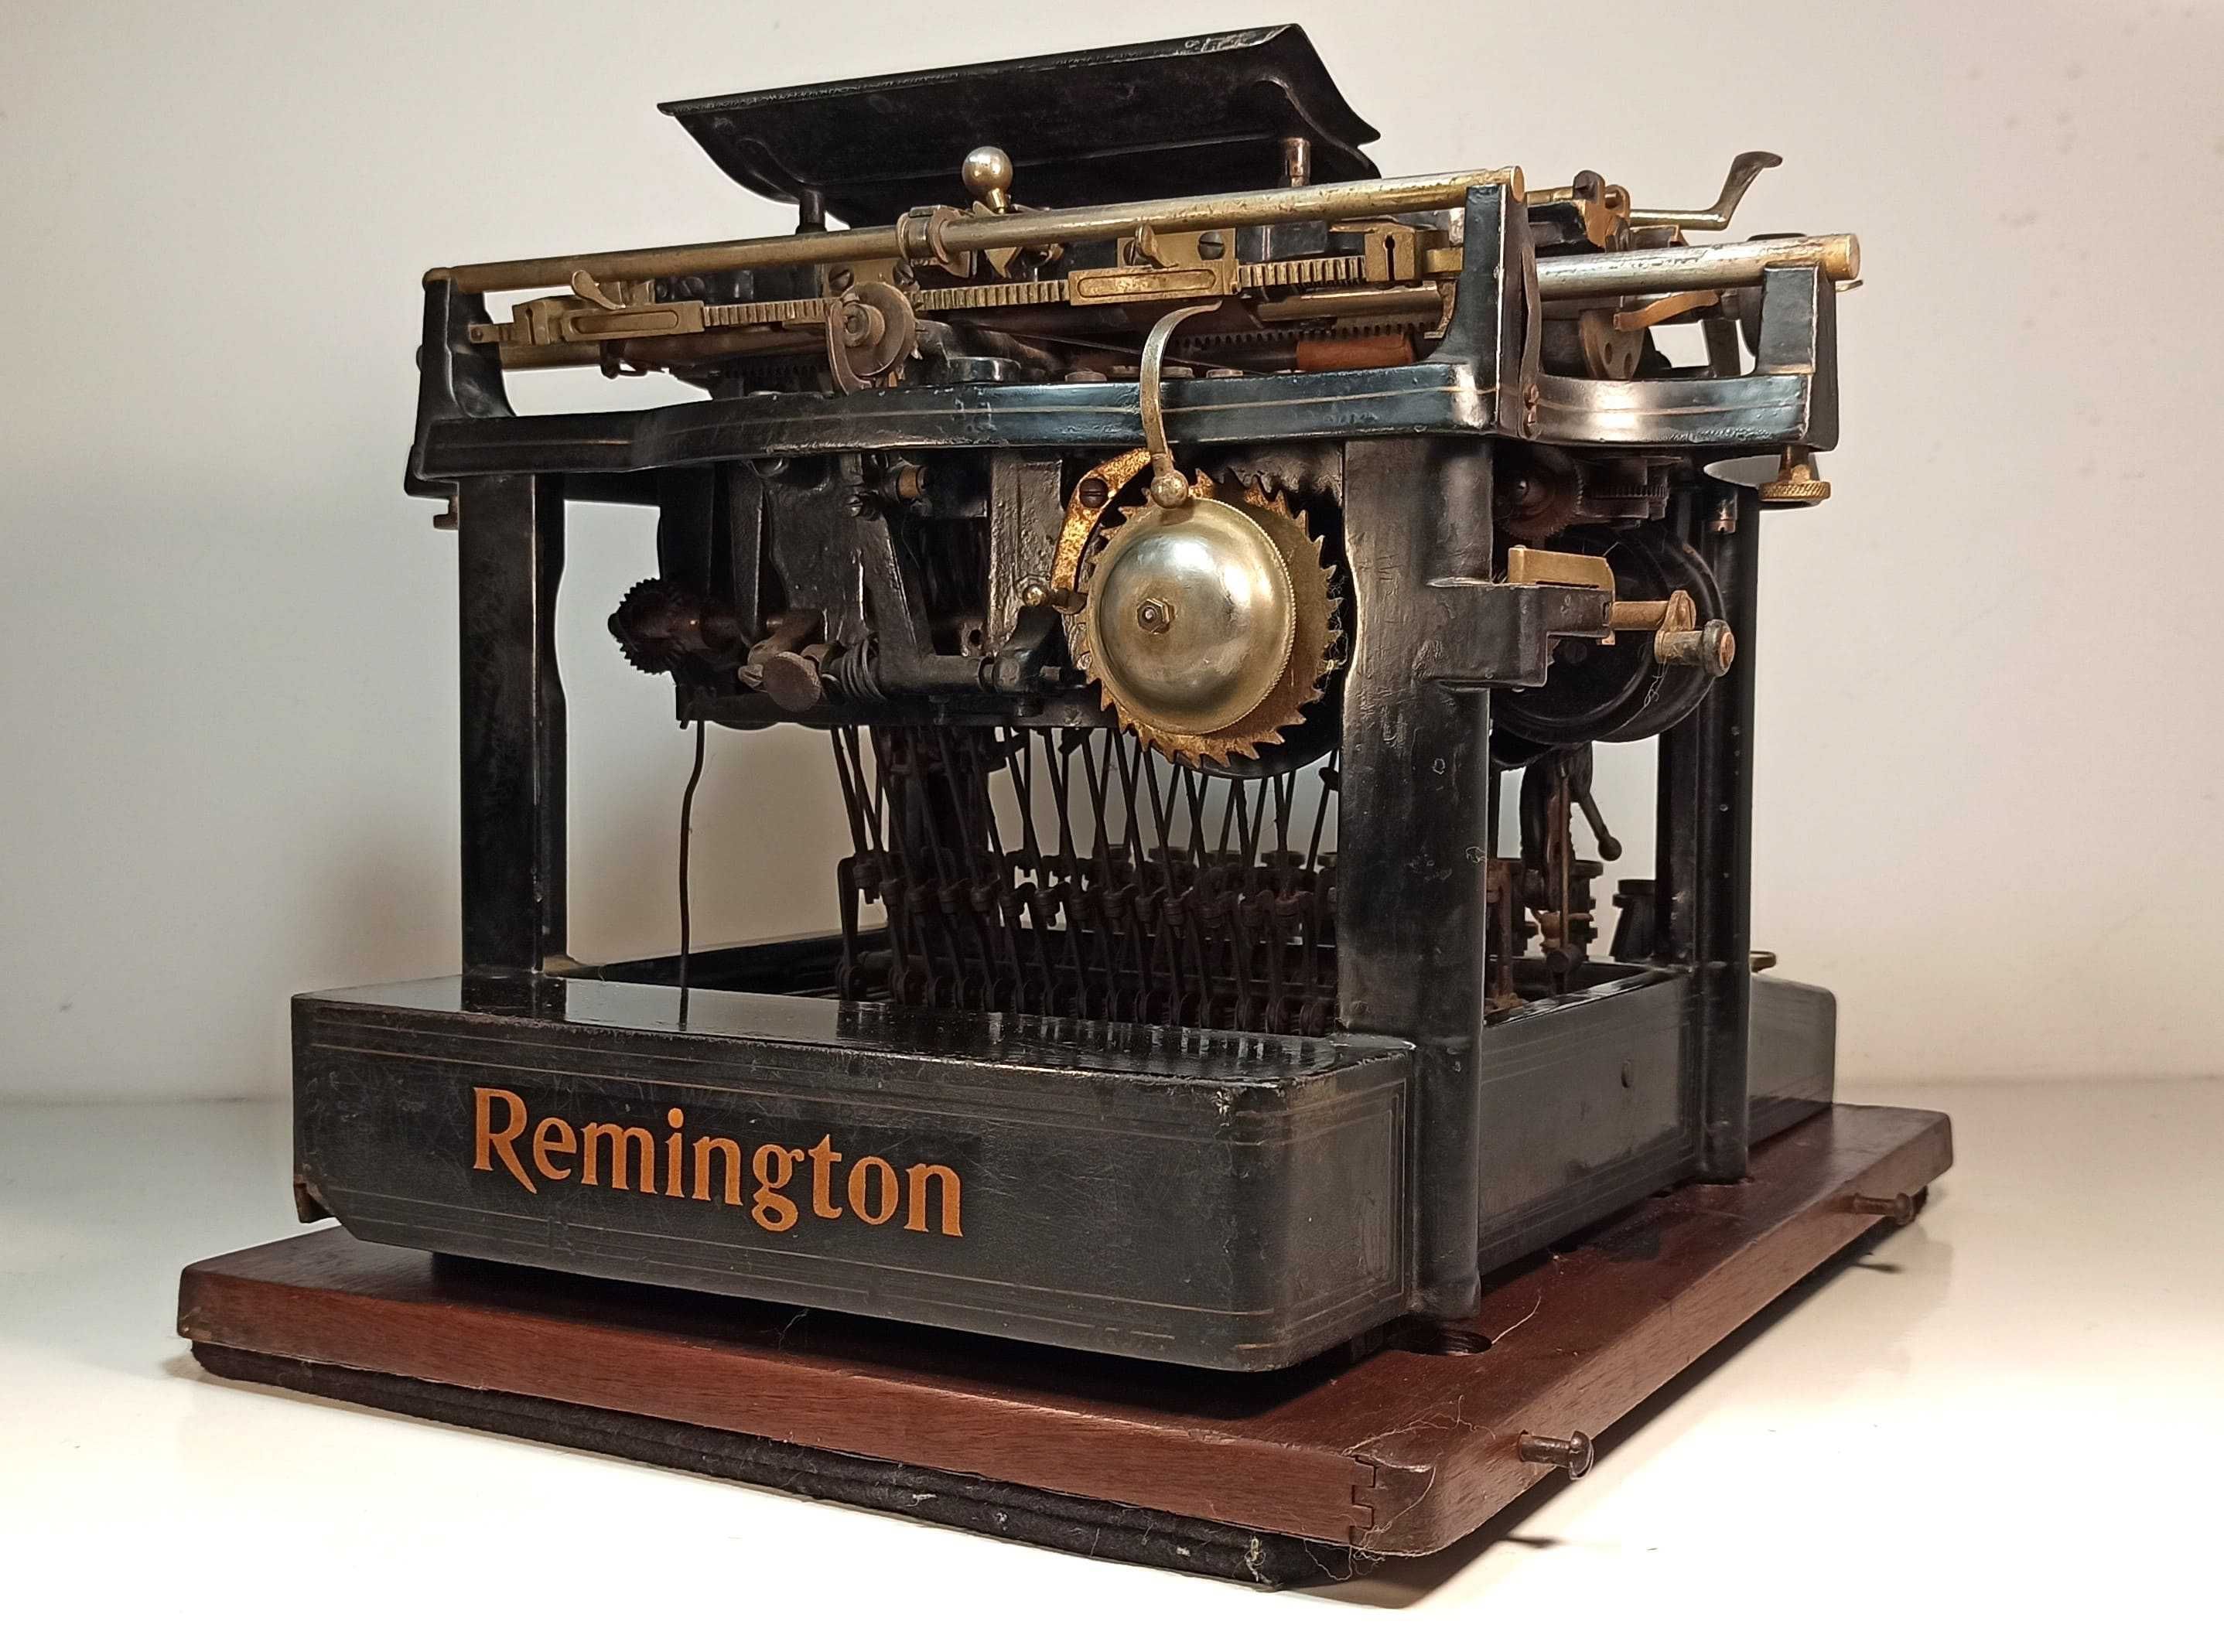 Mașina de scris Remington nr 7. Veche de 121 de ani! REDUCERE!